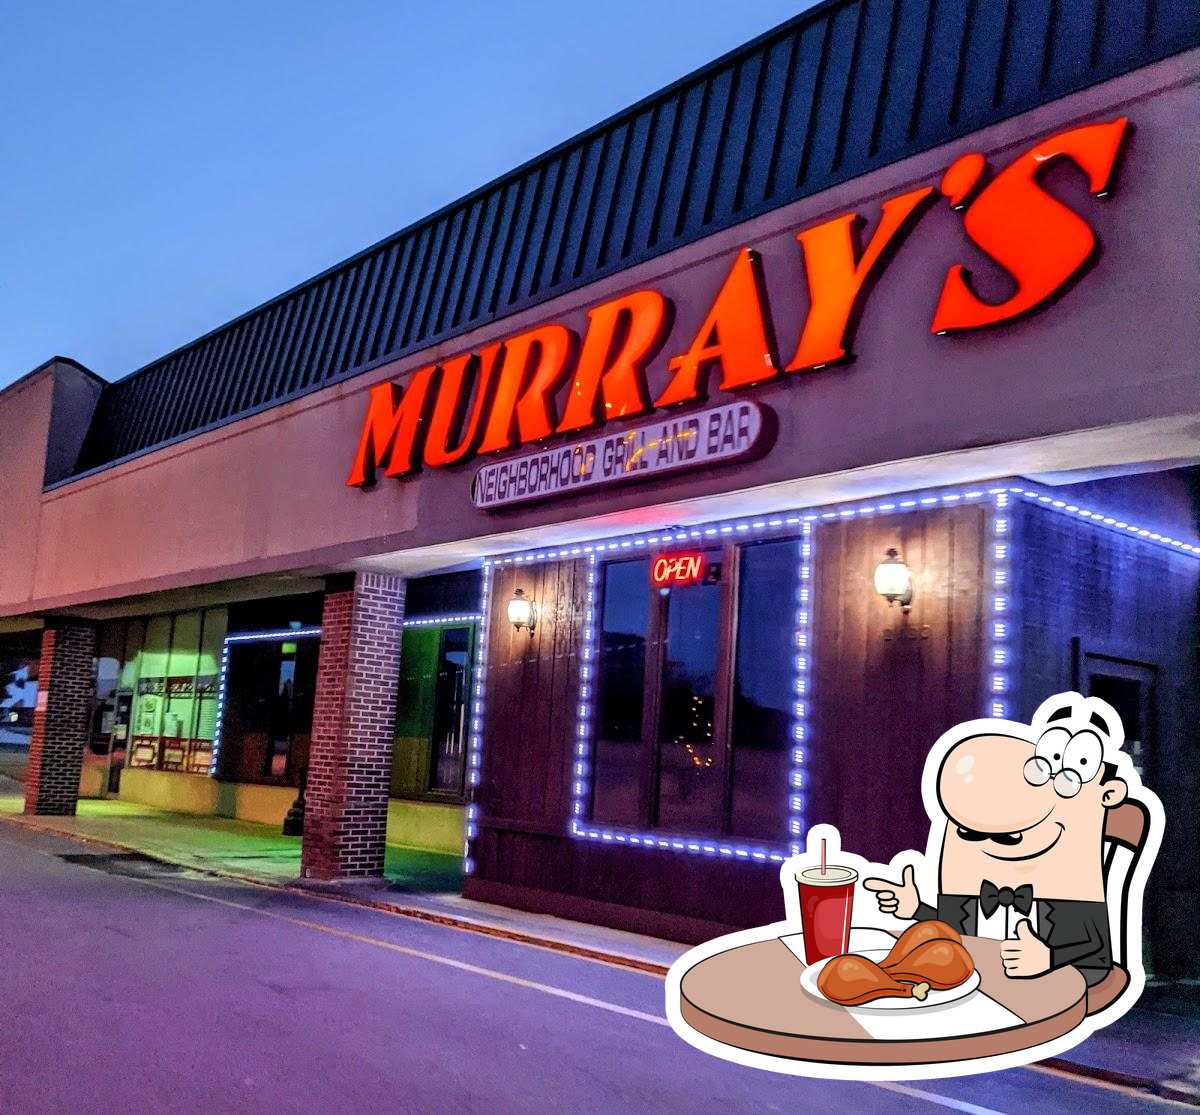 Murrays Neighborhood Bar & Grill  Murrays Neighborhood Bar & Grill